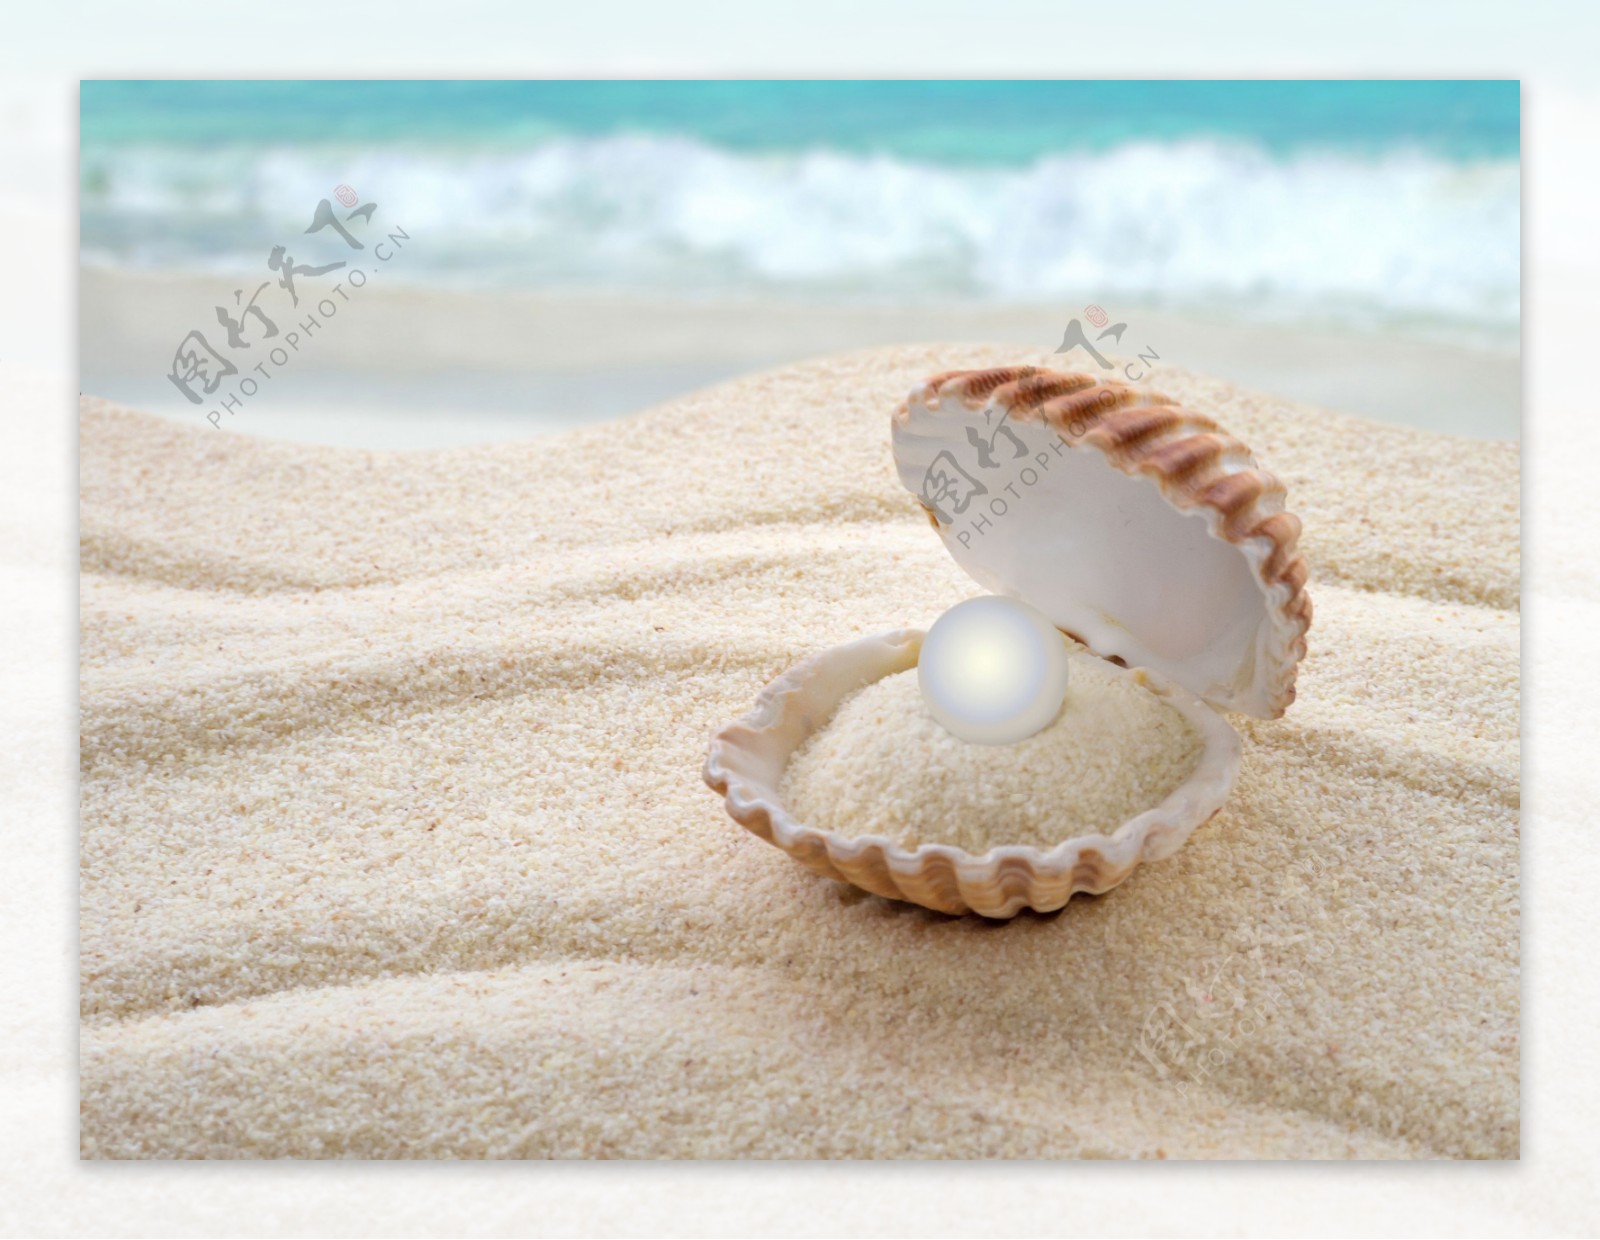 沙滩上的珍珠蚌类